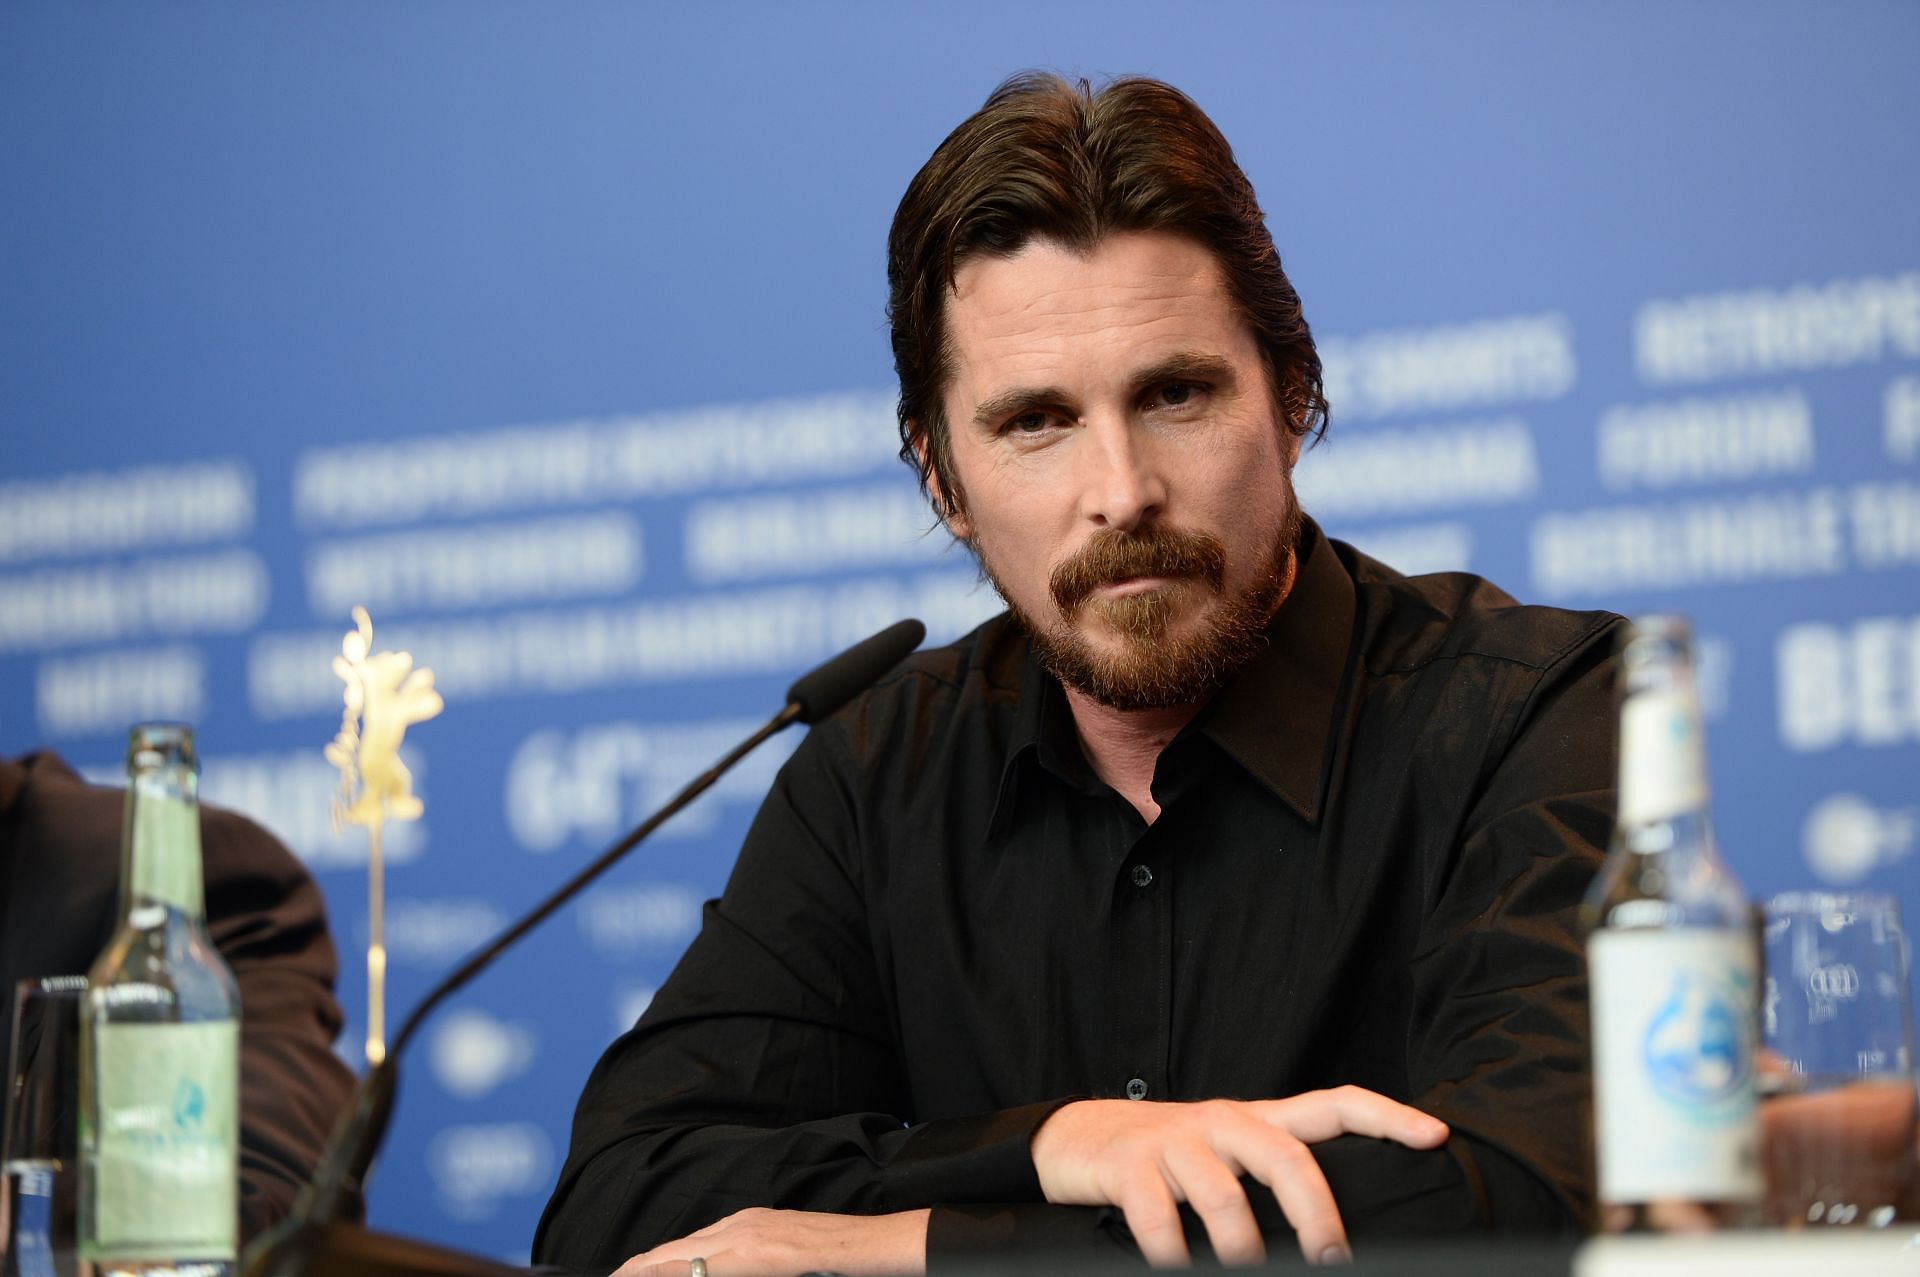 Christian Bale is Patrick Bateman in American Psycho (Image via Ian Gavan/Getty Images)